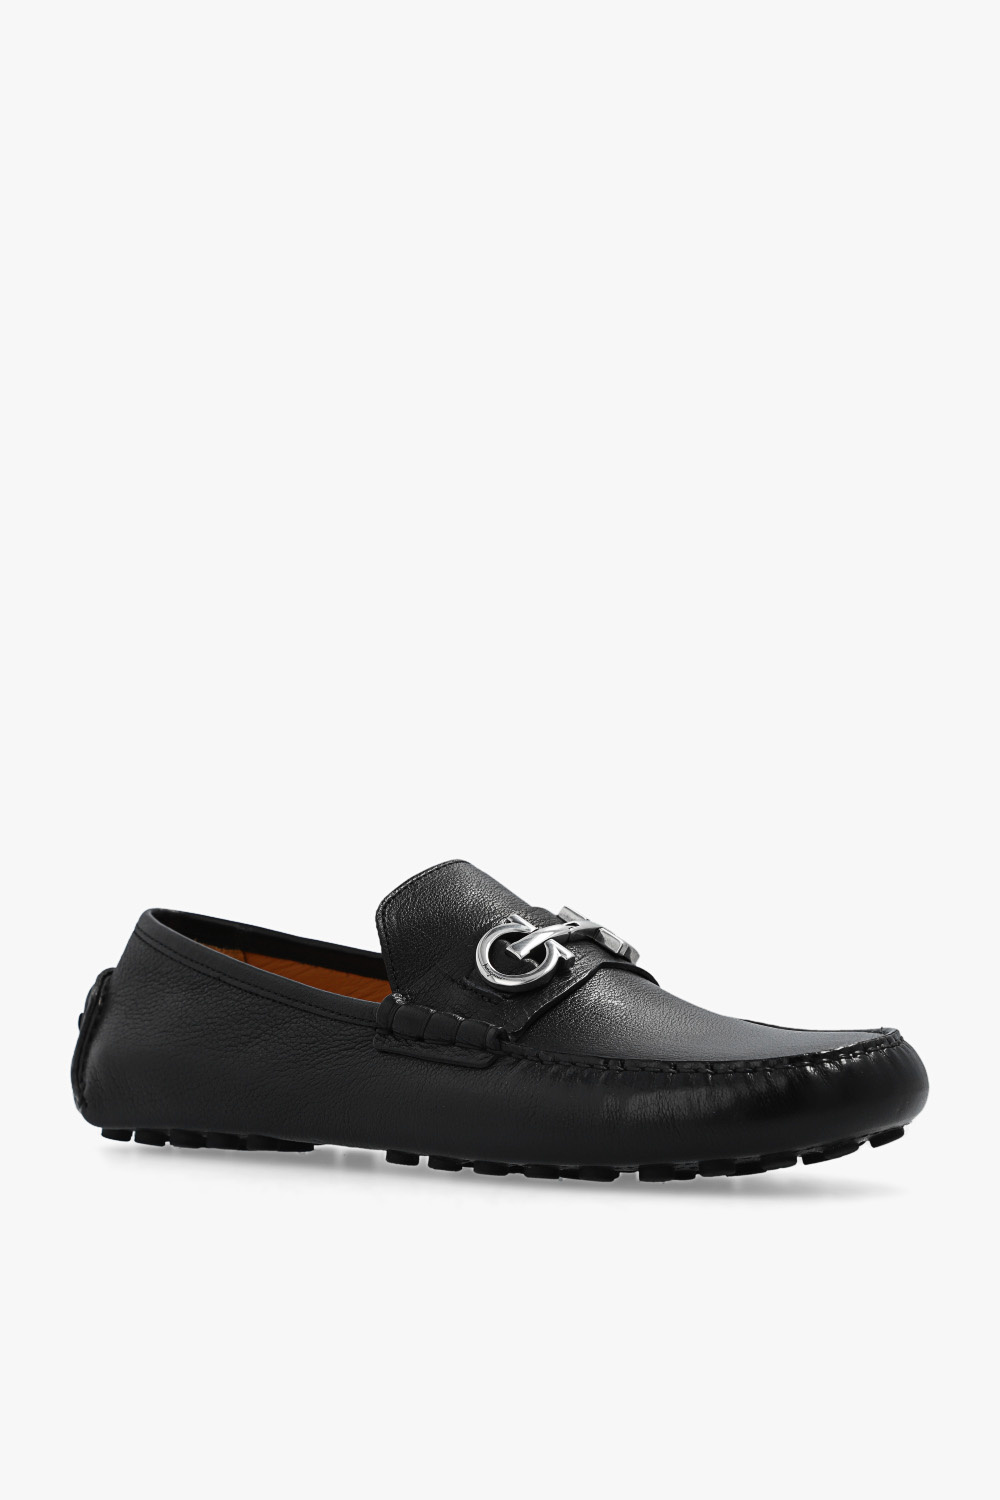 FERRAGAMO ‘Grazioso’ leather black shoes